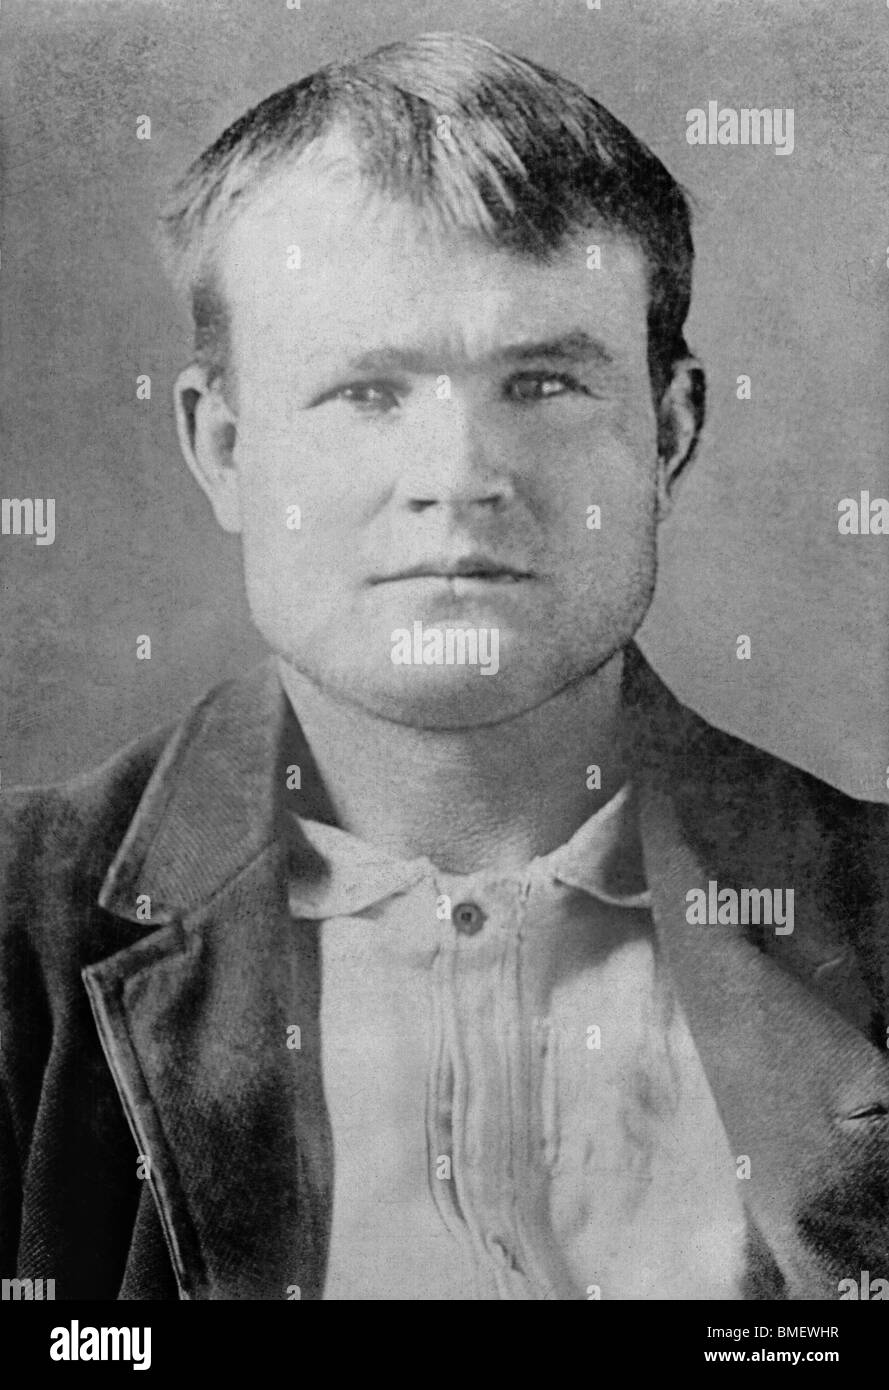 Vintage Gefängnis Foto c1893 der berüchtigten amerikanischen Outlaw Butch Cassidy (1866 - c1908), richtiger Name Robert LeRoy Parker. Stockfoto